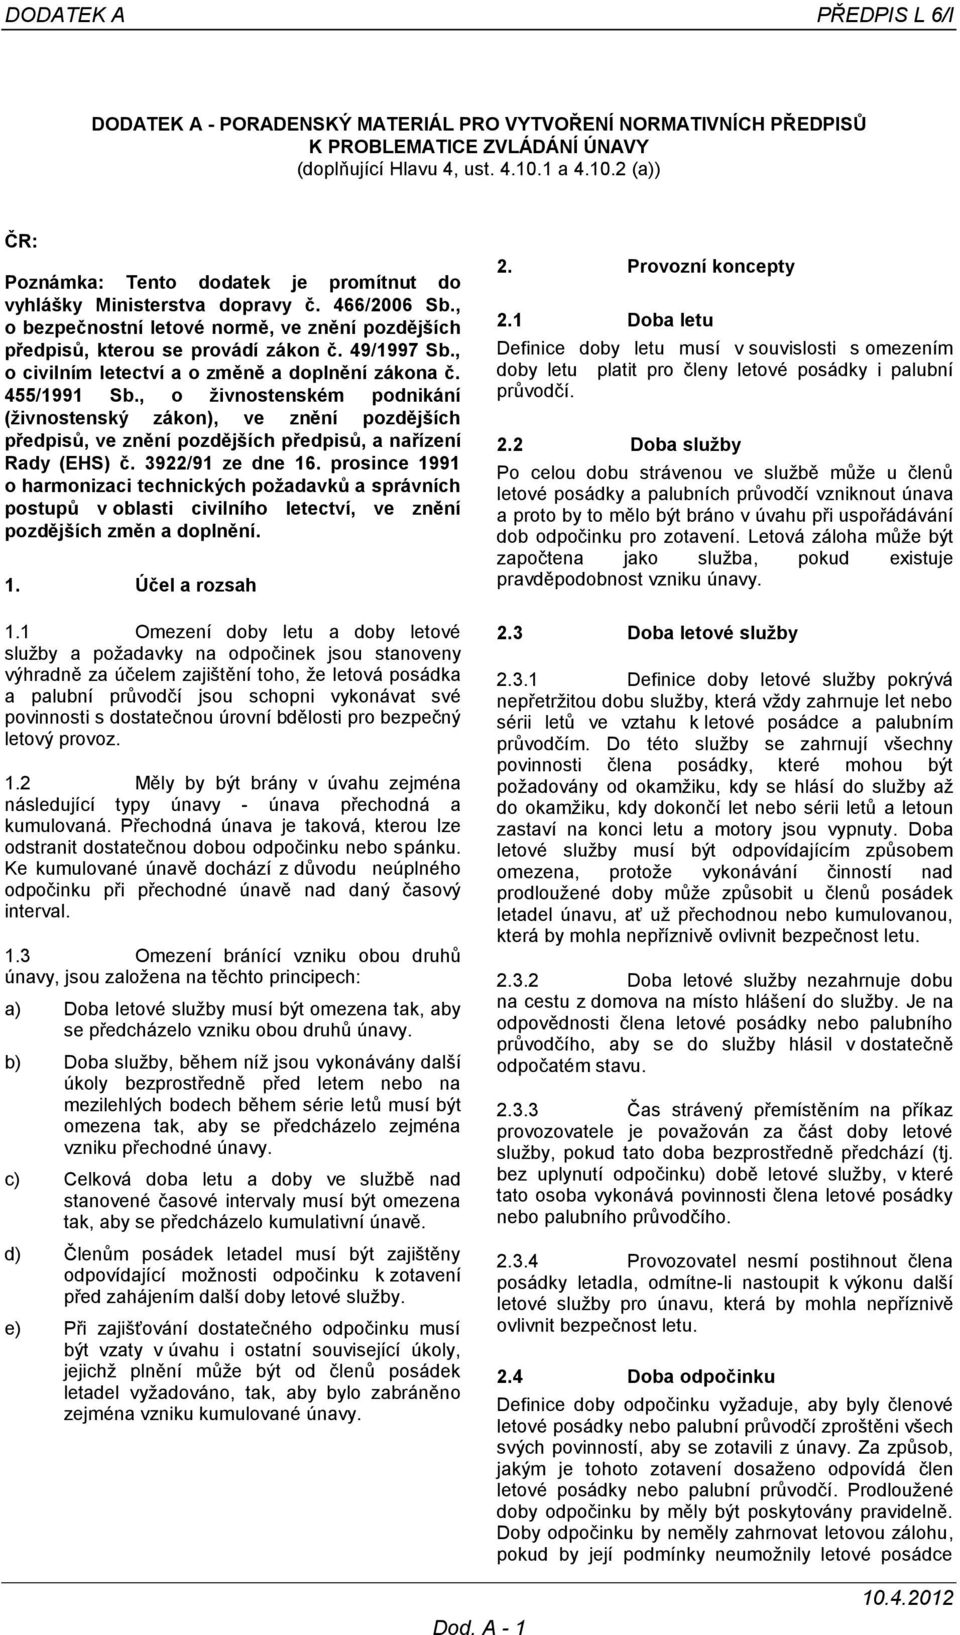 49/1997 Sb., o civilním letectví a o změně a doplnění zákona č. 455/1991 Sb.